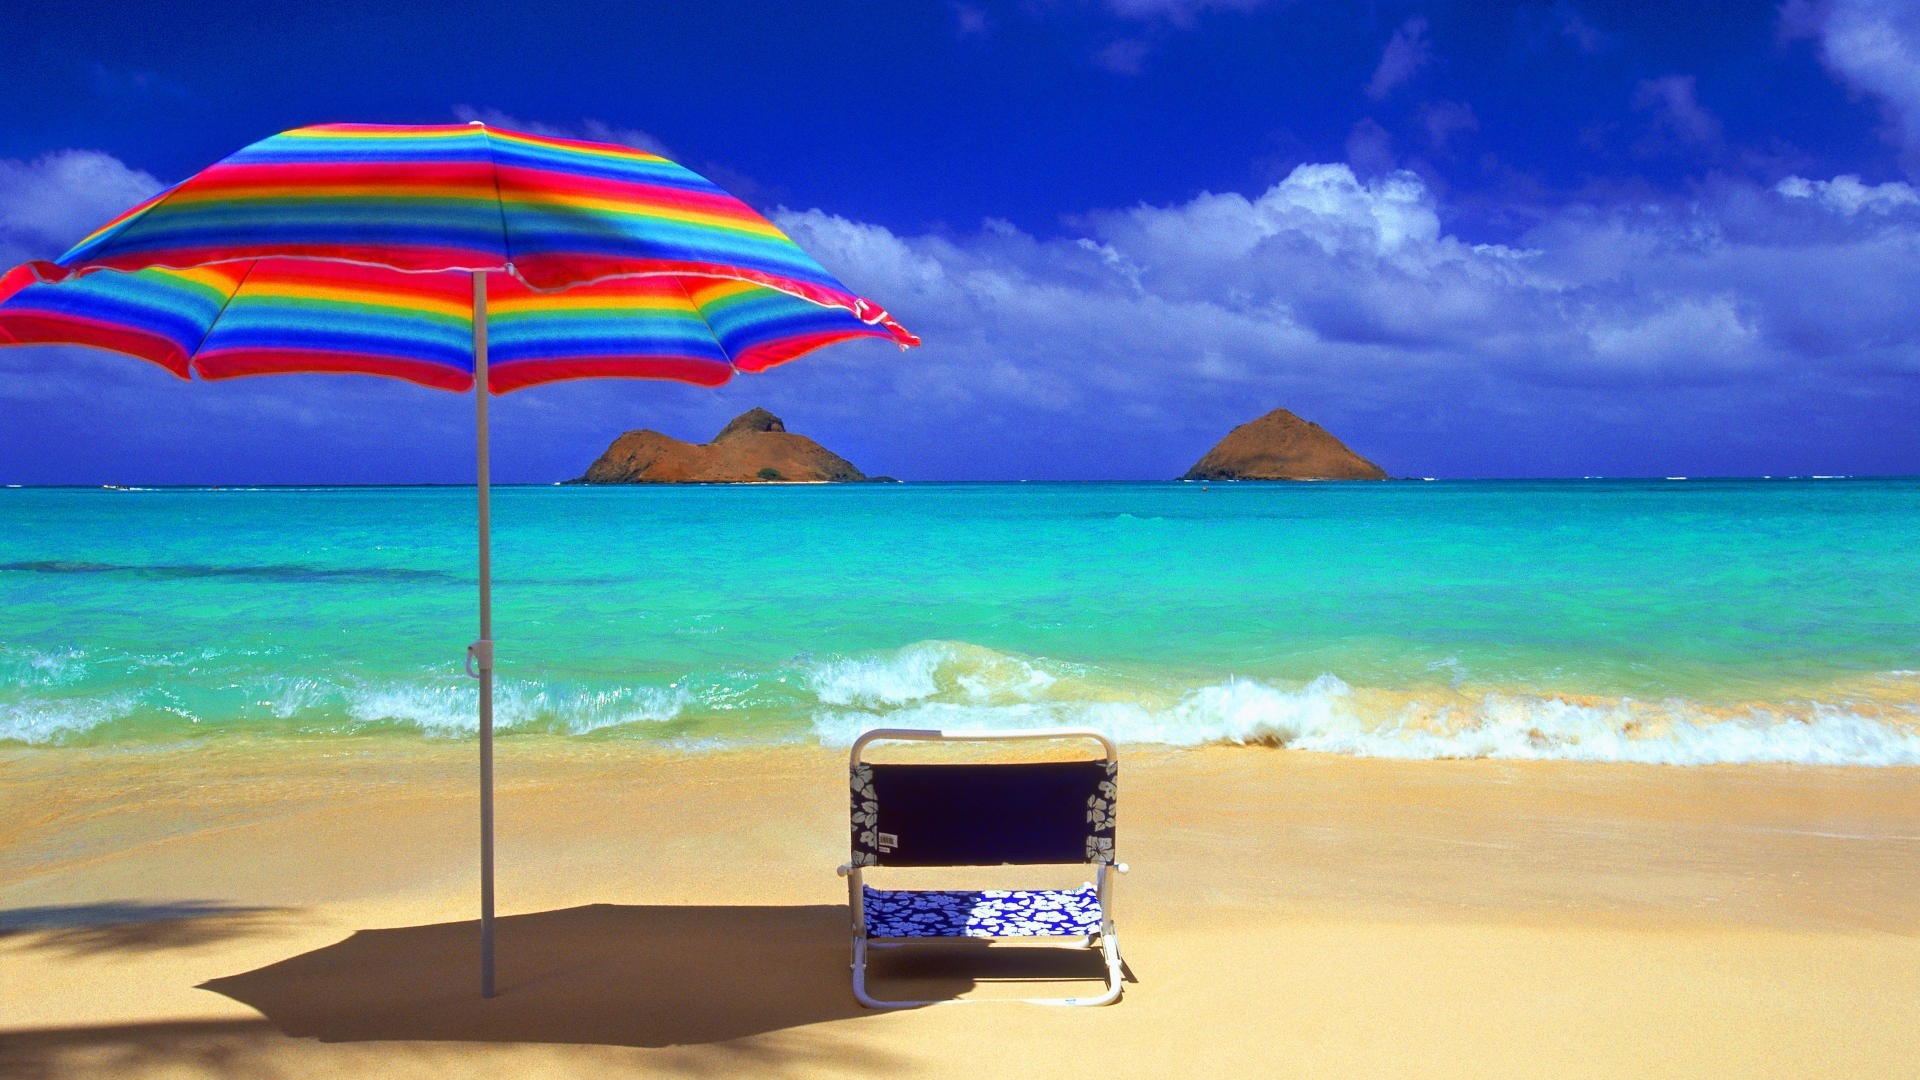 Descarga gratuita de fondo de pantalla para móvil de Mar, Playa, Silla, Océano, Tierra, Paraguas, Fotografía, Tropico.